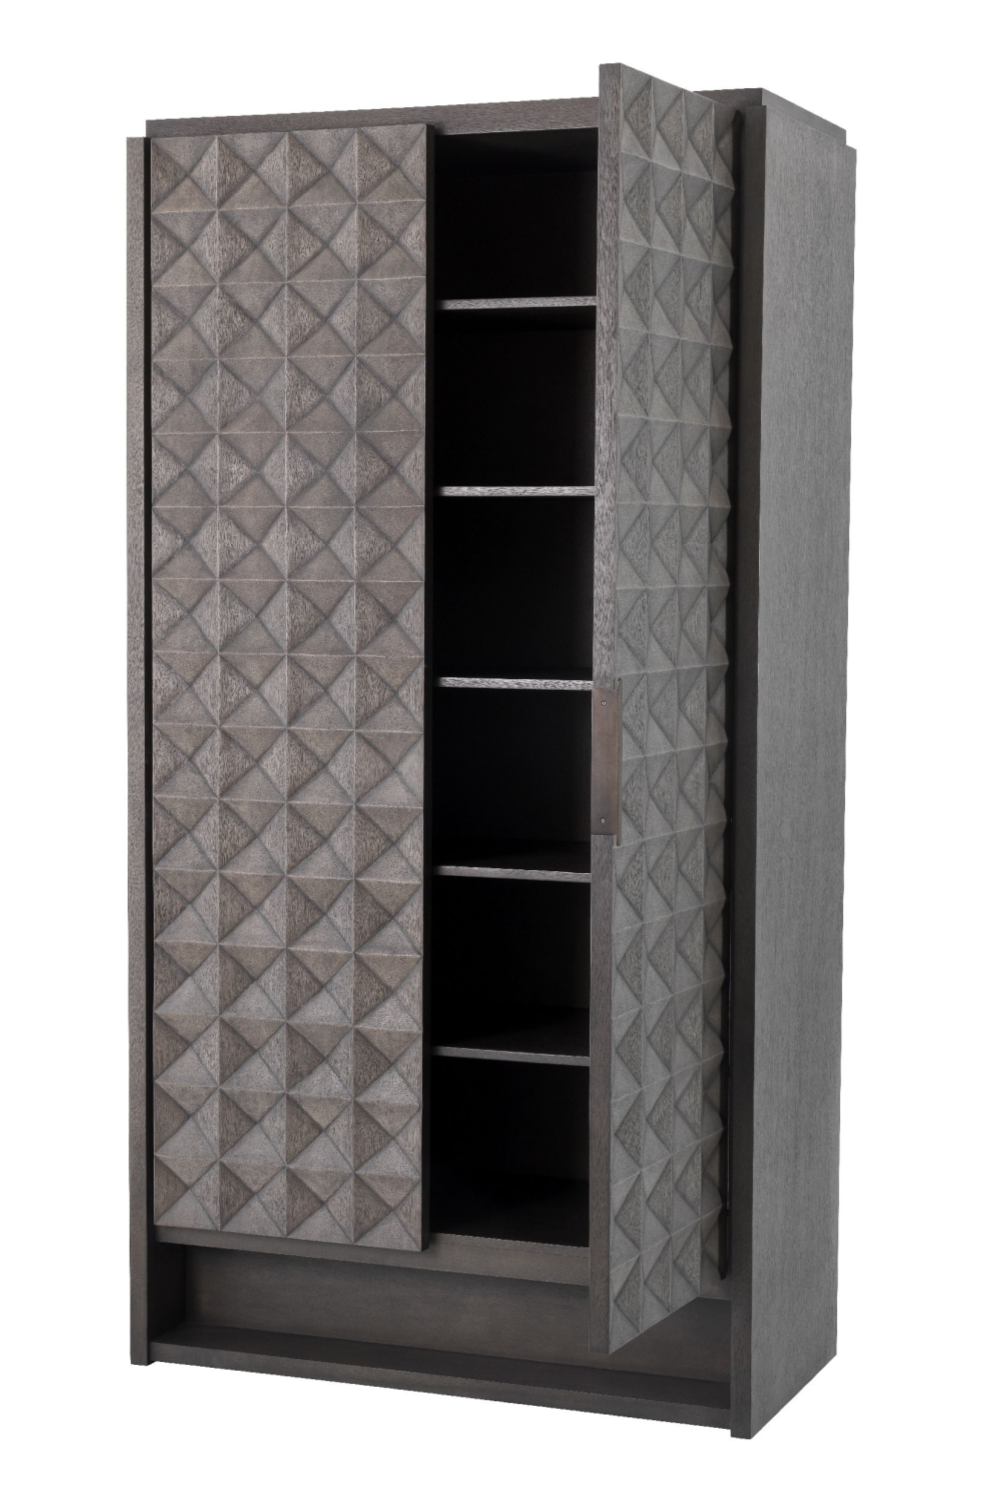 2-Door Meranti Wood Cabinet | Eichholtz Jane | #1 Eichholtz Retailer  